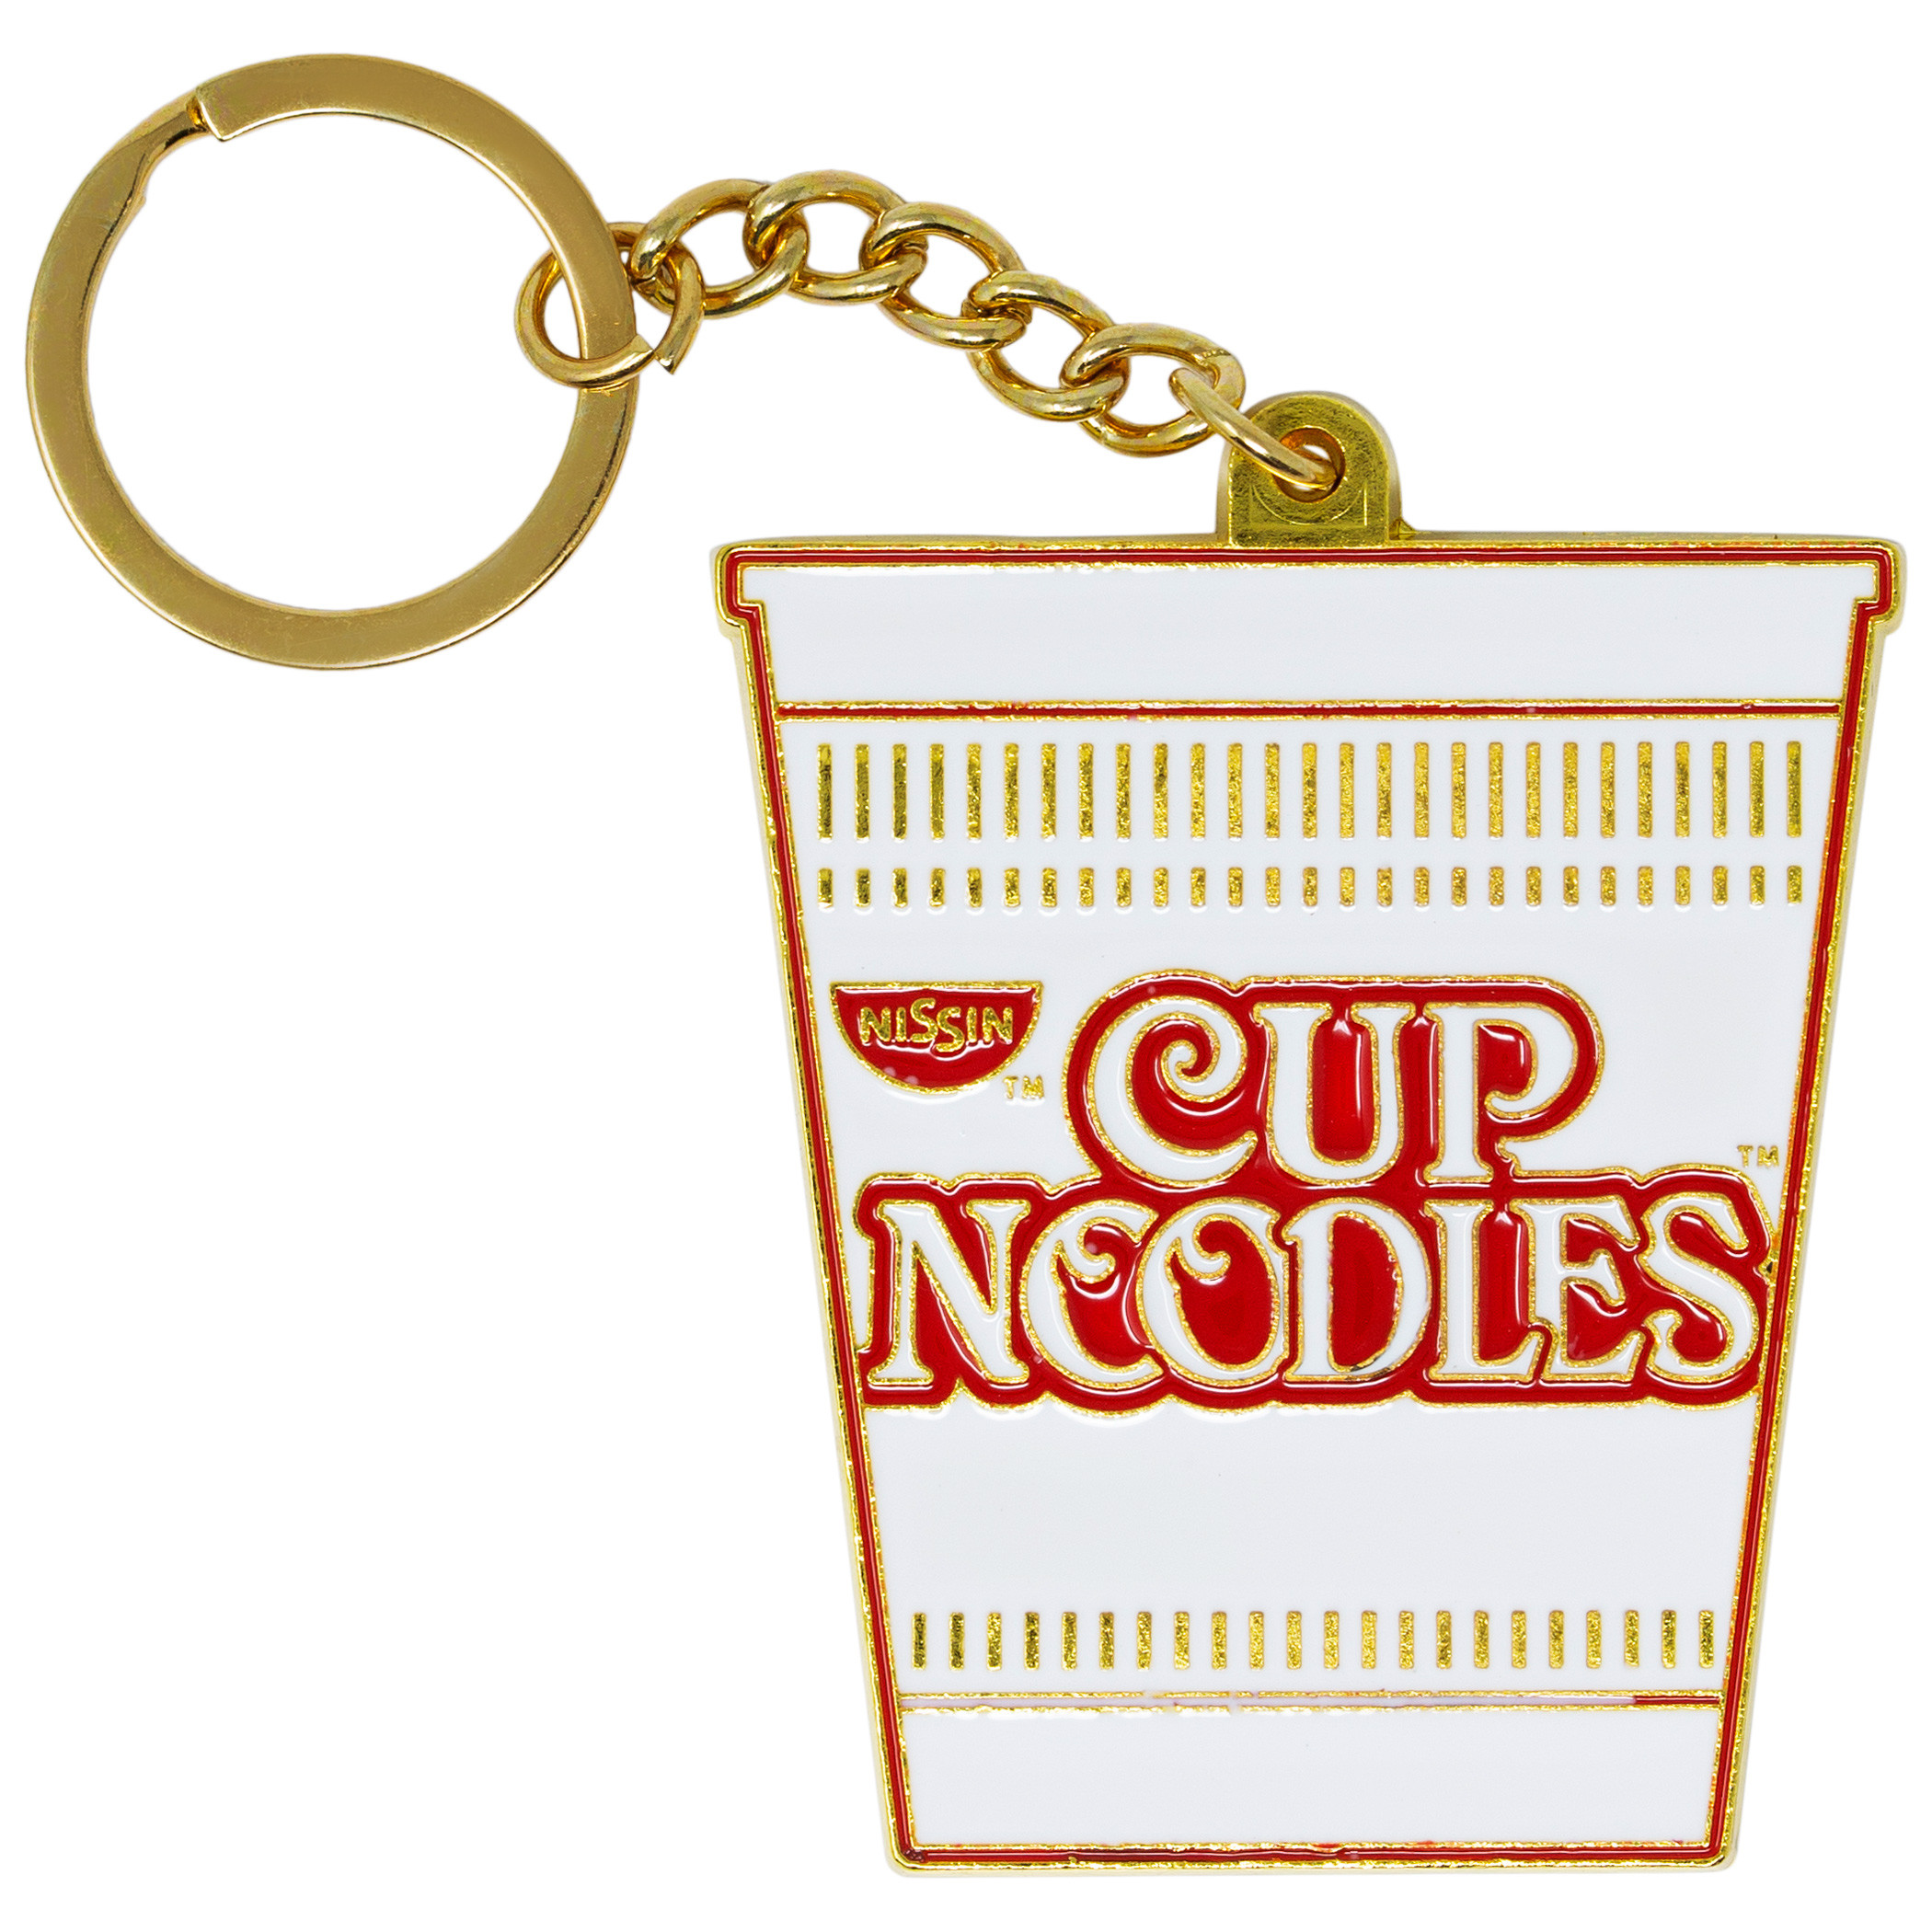 Cup Noodles Key Chain